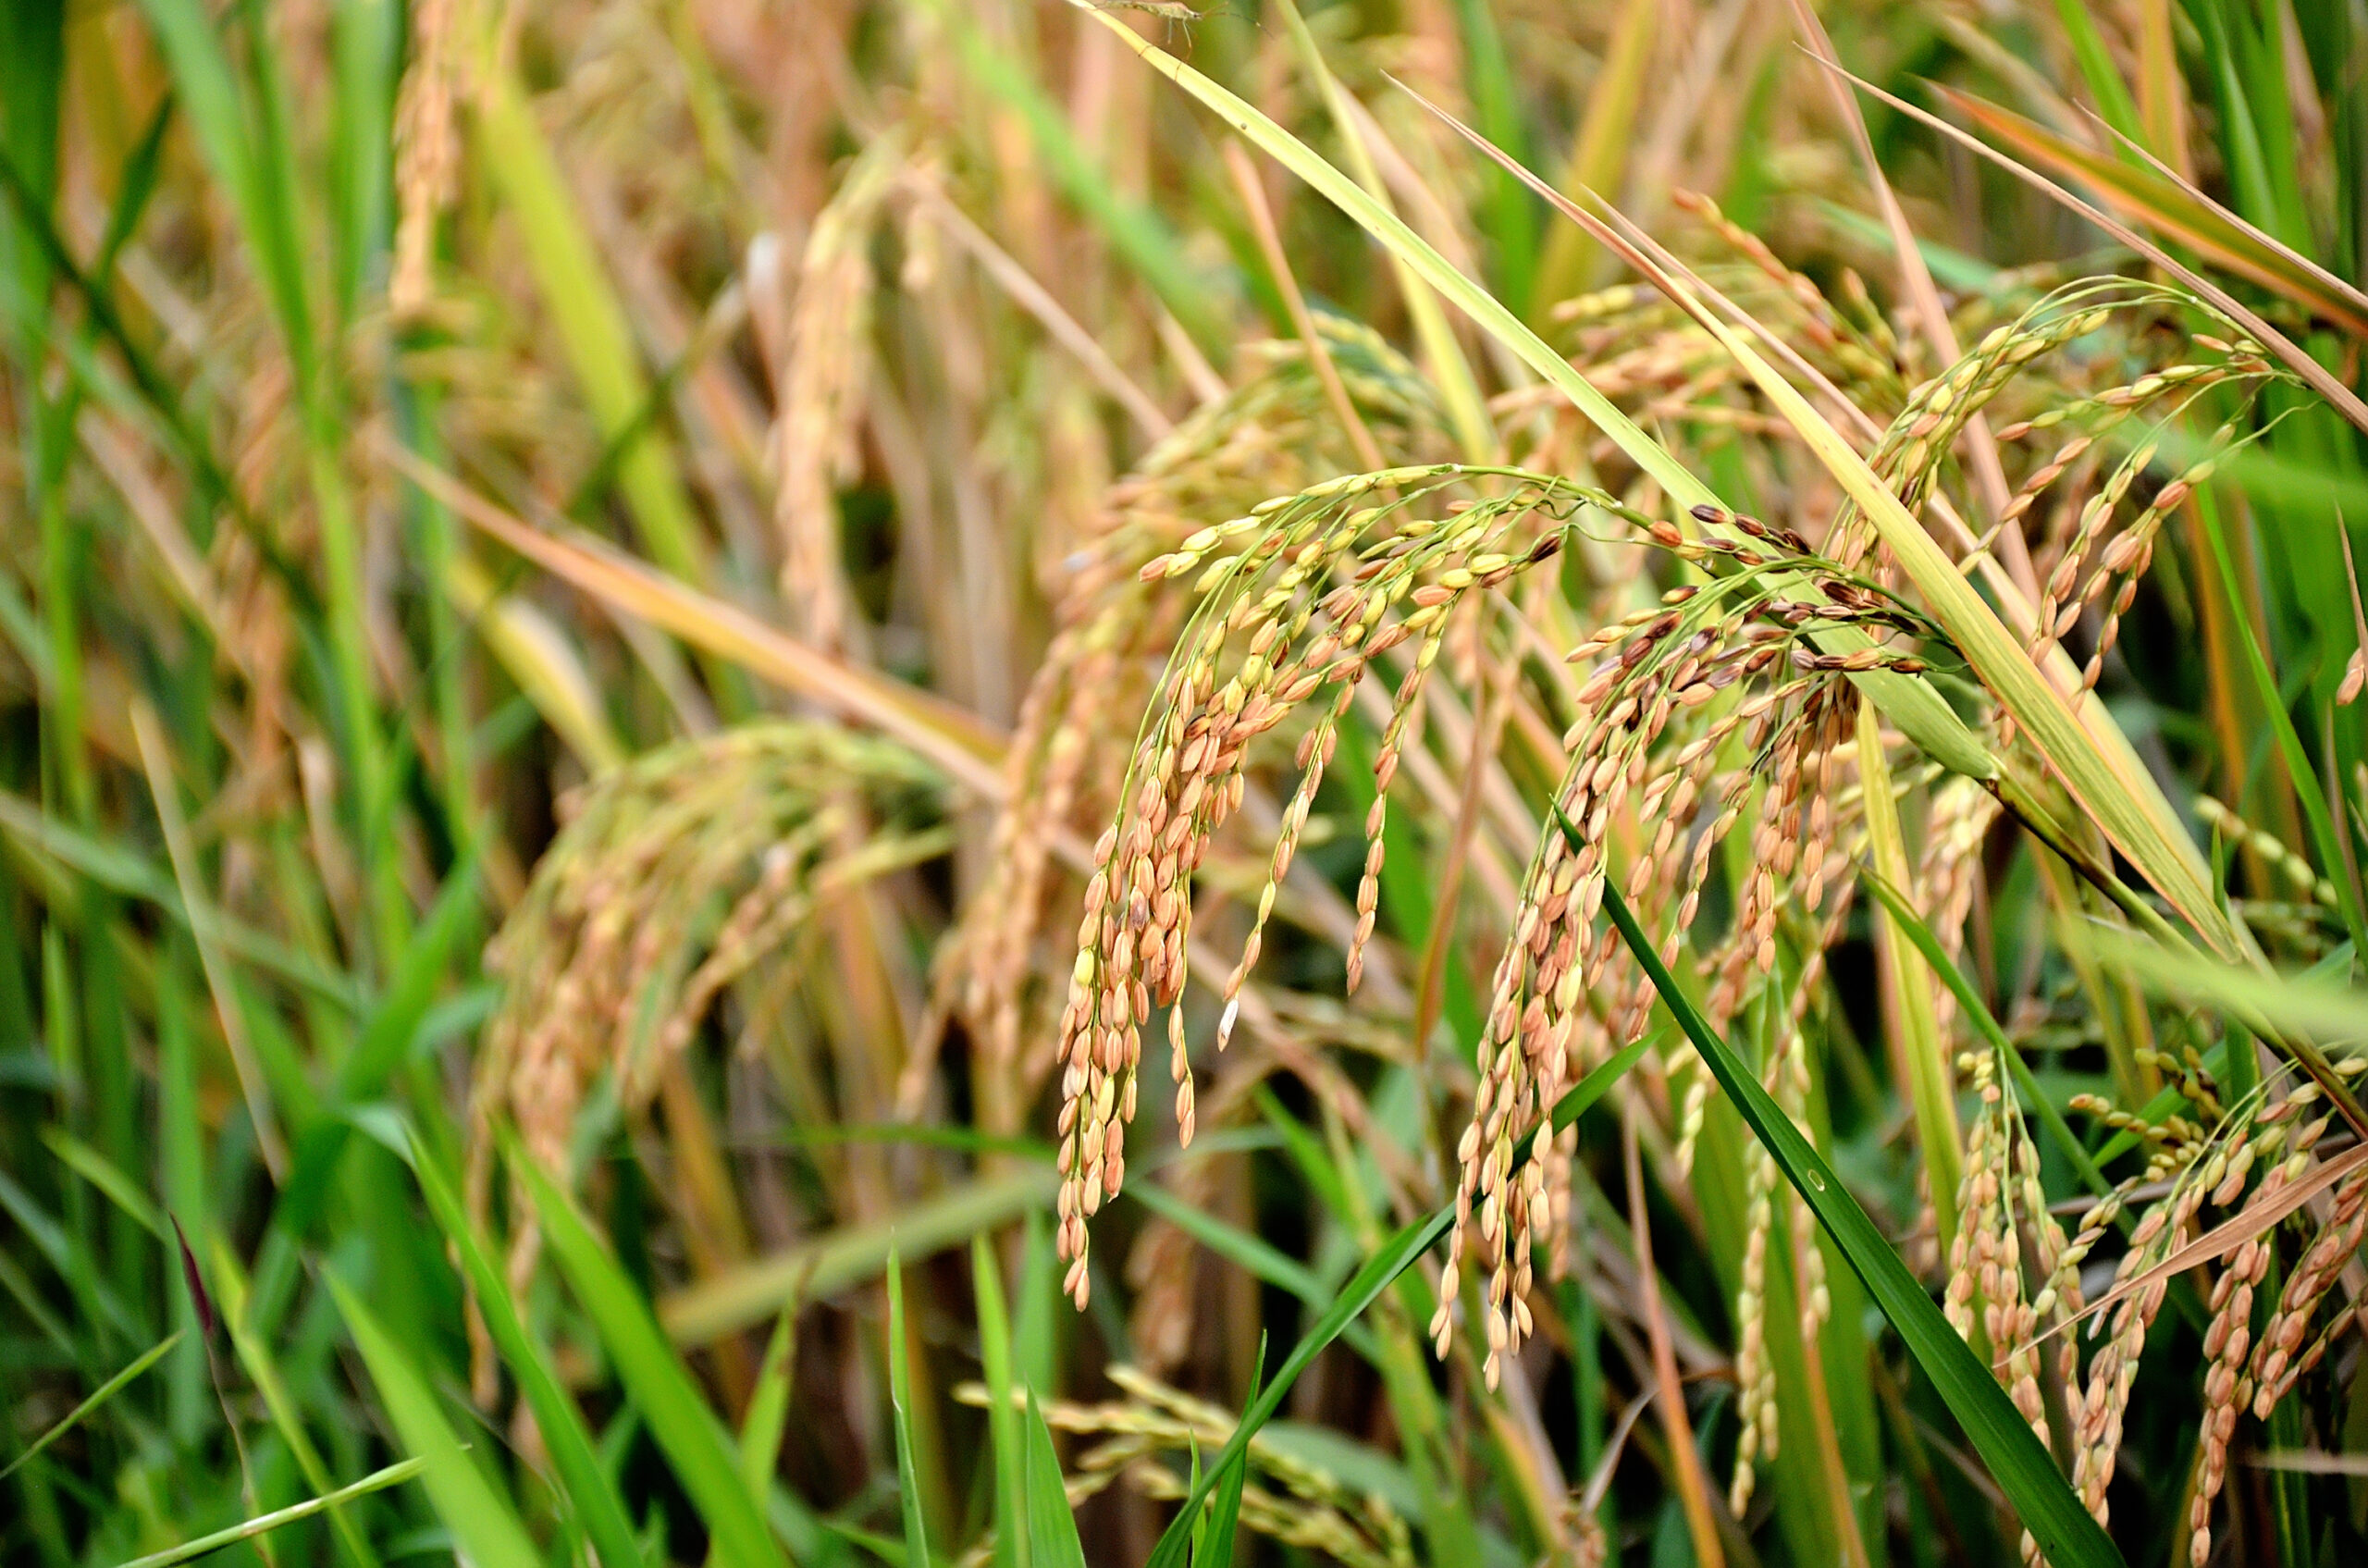 تاثیر سیلیکات پتاسیم روی محصول برنج